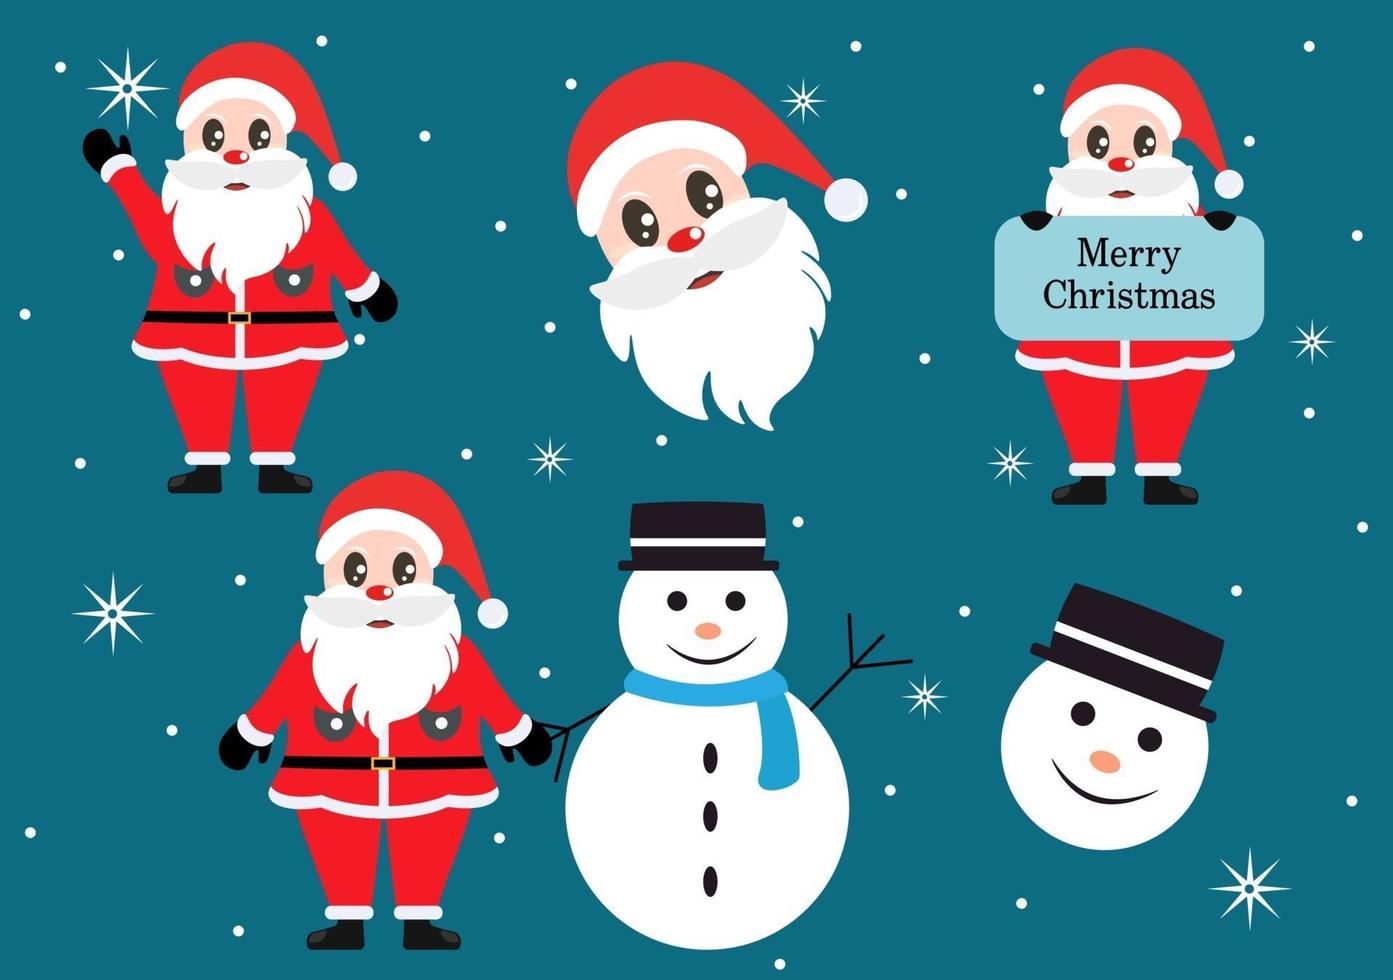 vrolijk kerstfeest, leuke cartoon santa claus achtergrond en vrienden vector